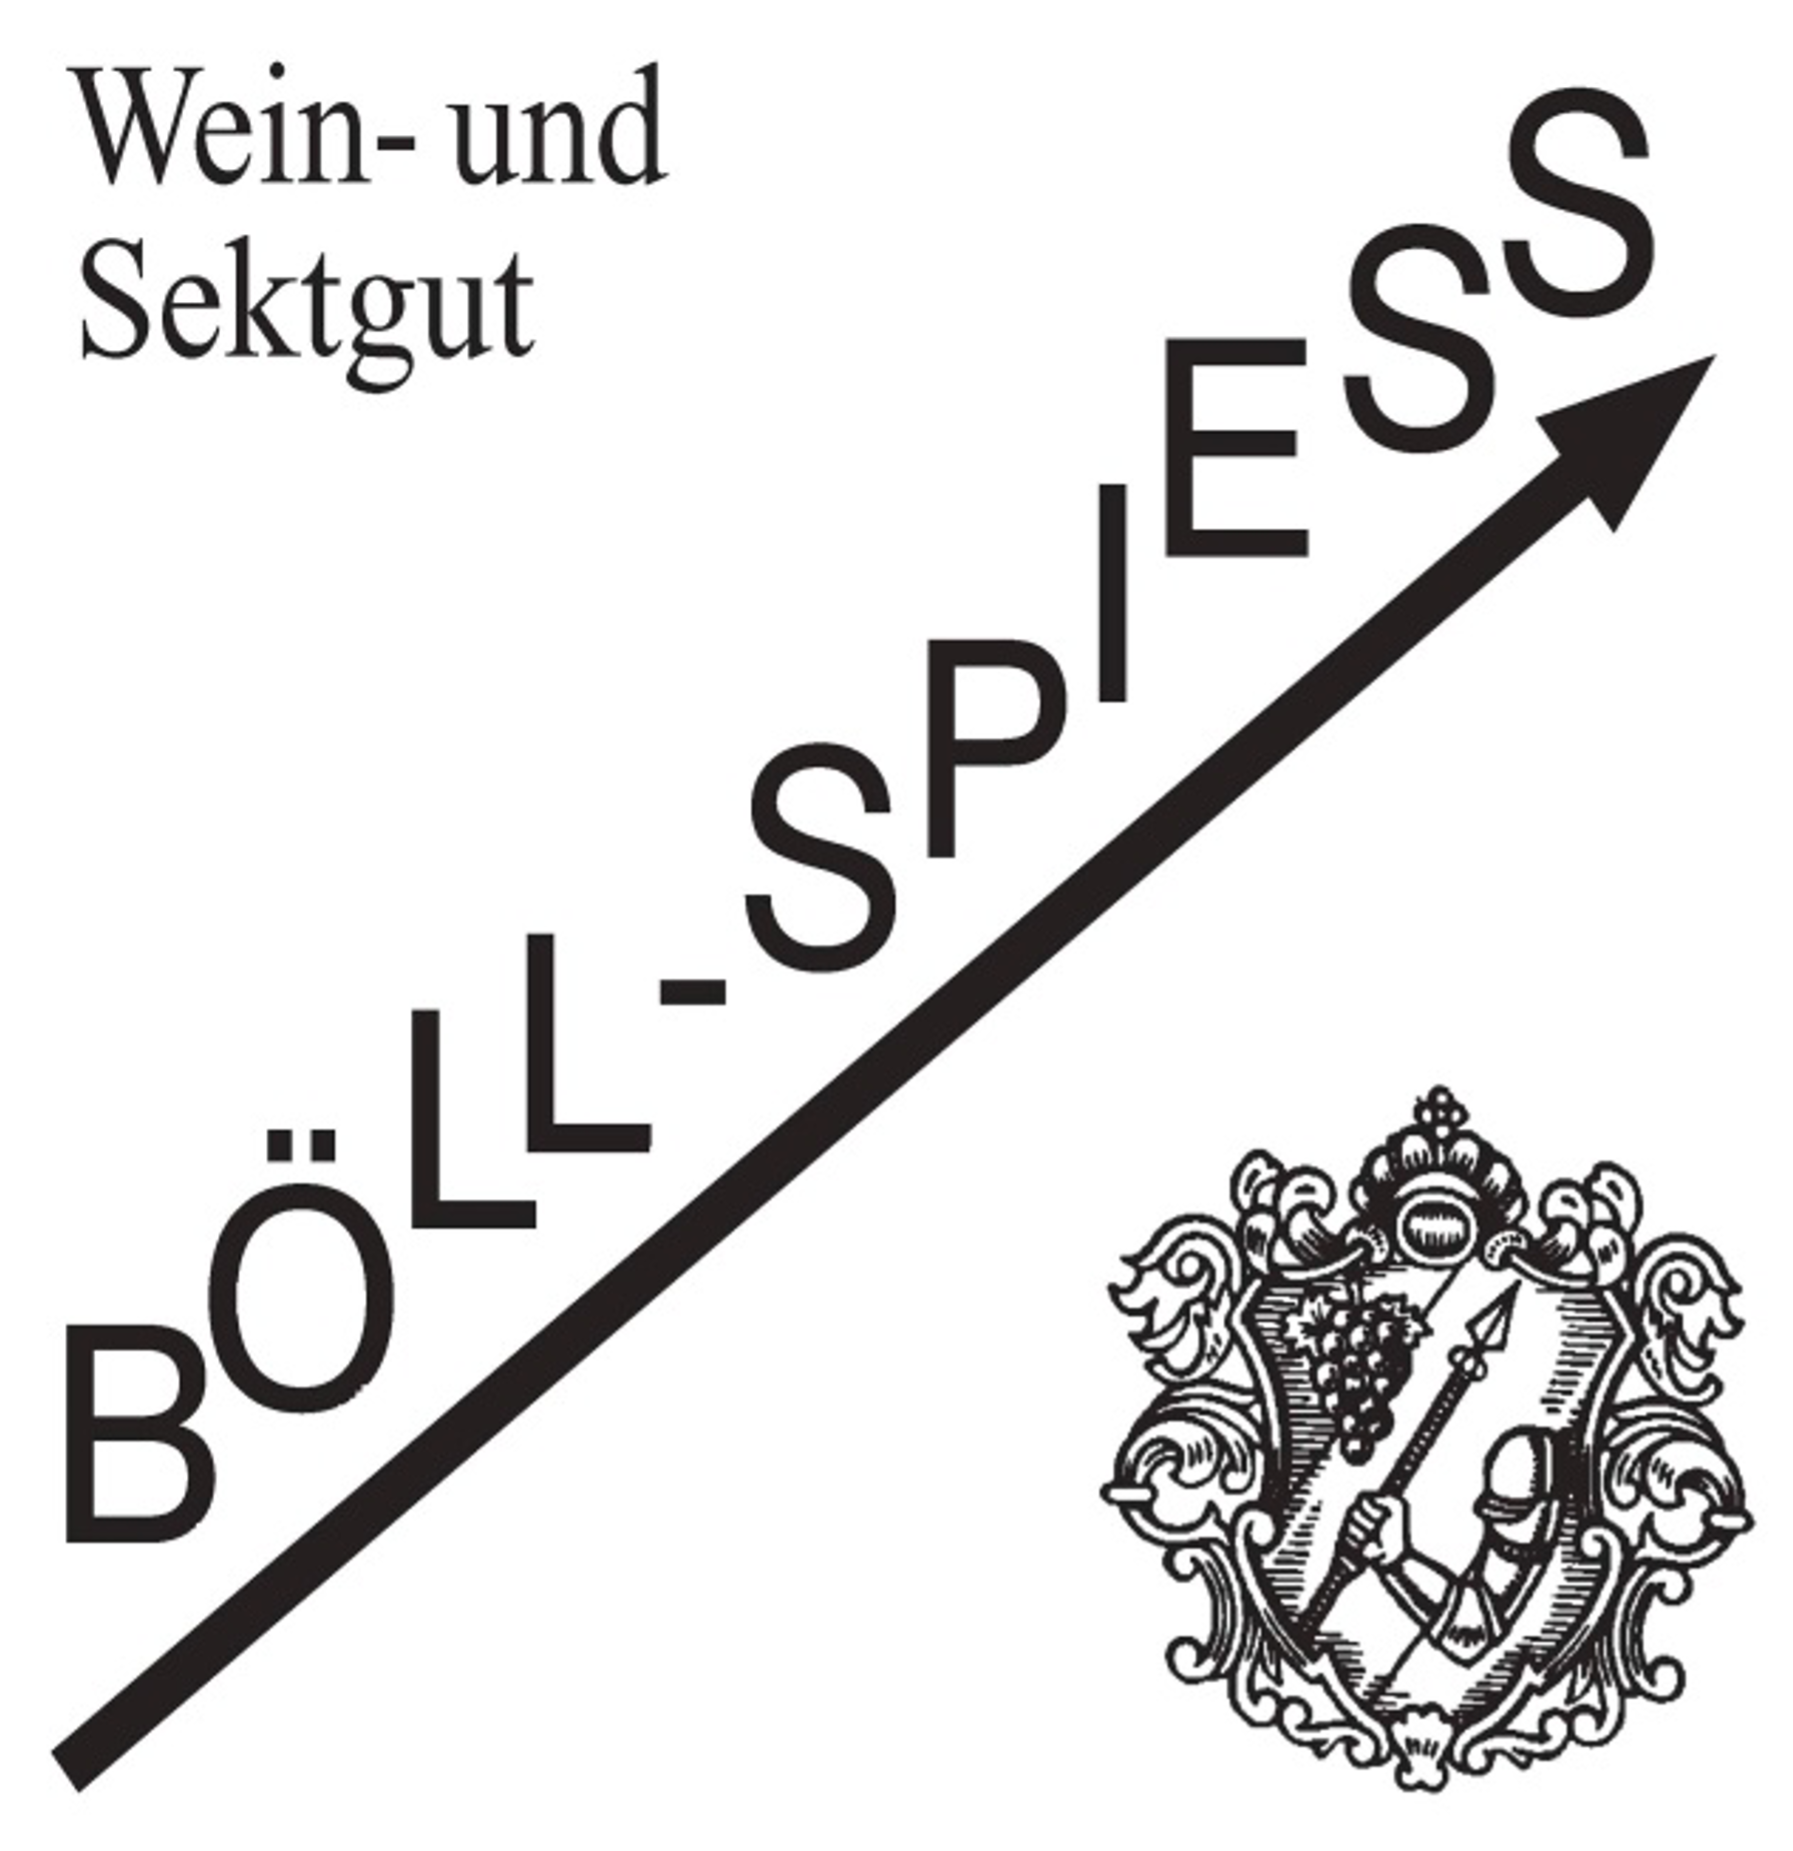 Weingut Böll-Spiess